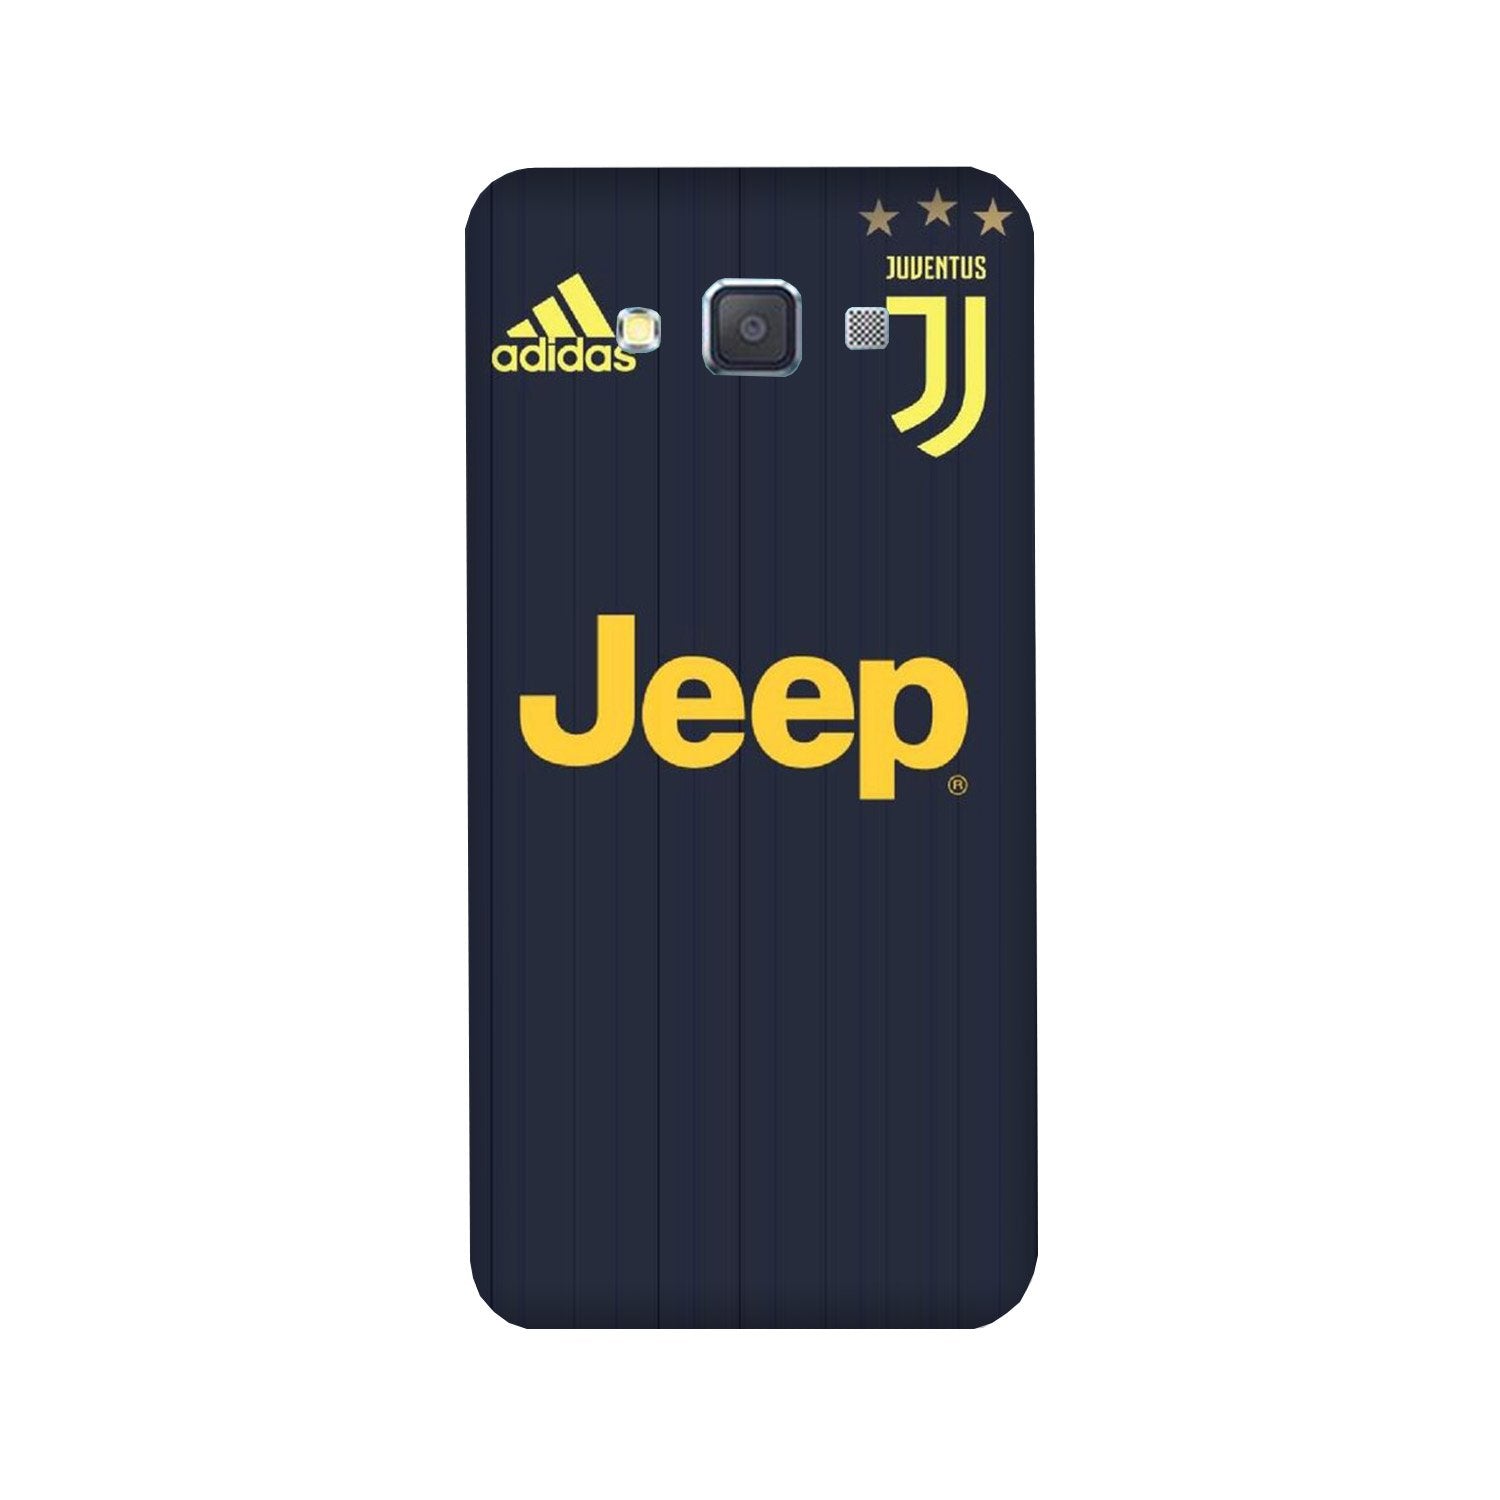 Jeep Juventus Case for Galaxy E5  (Design - 161)